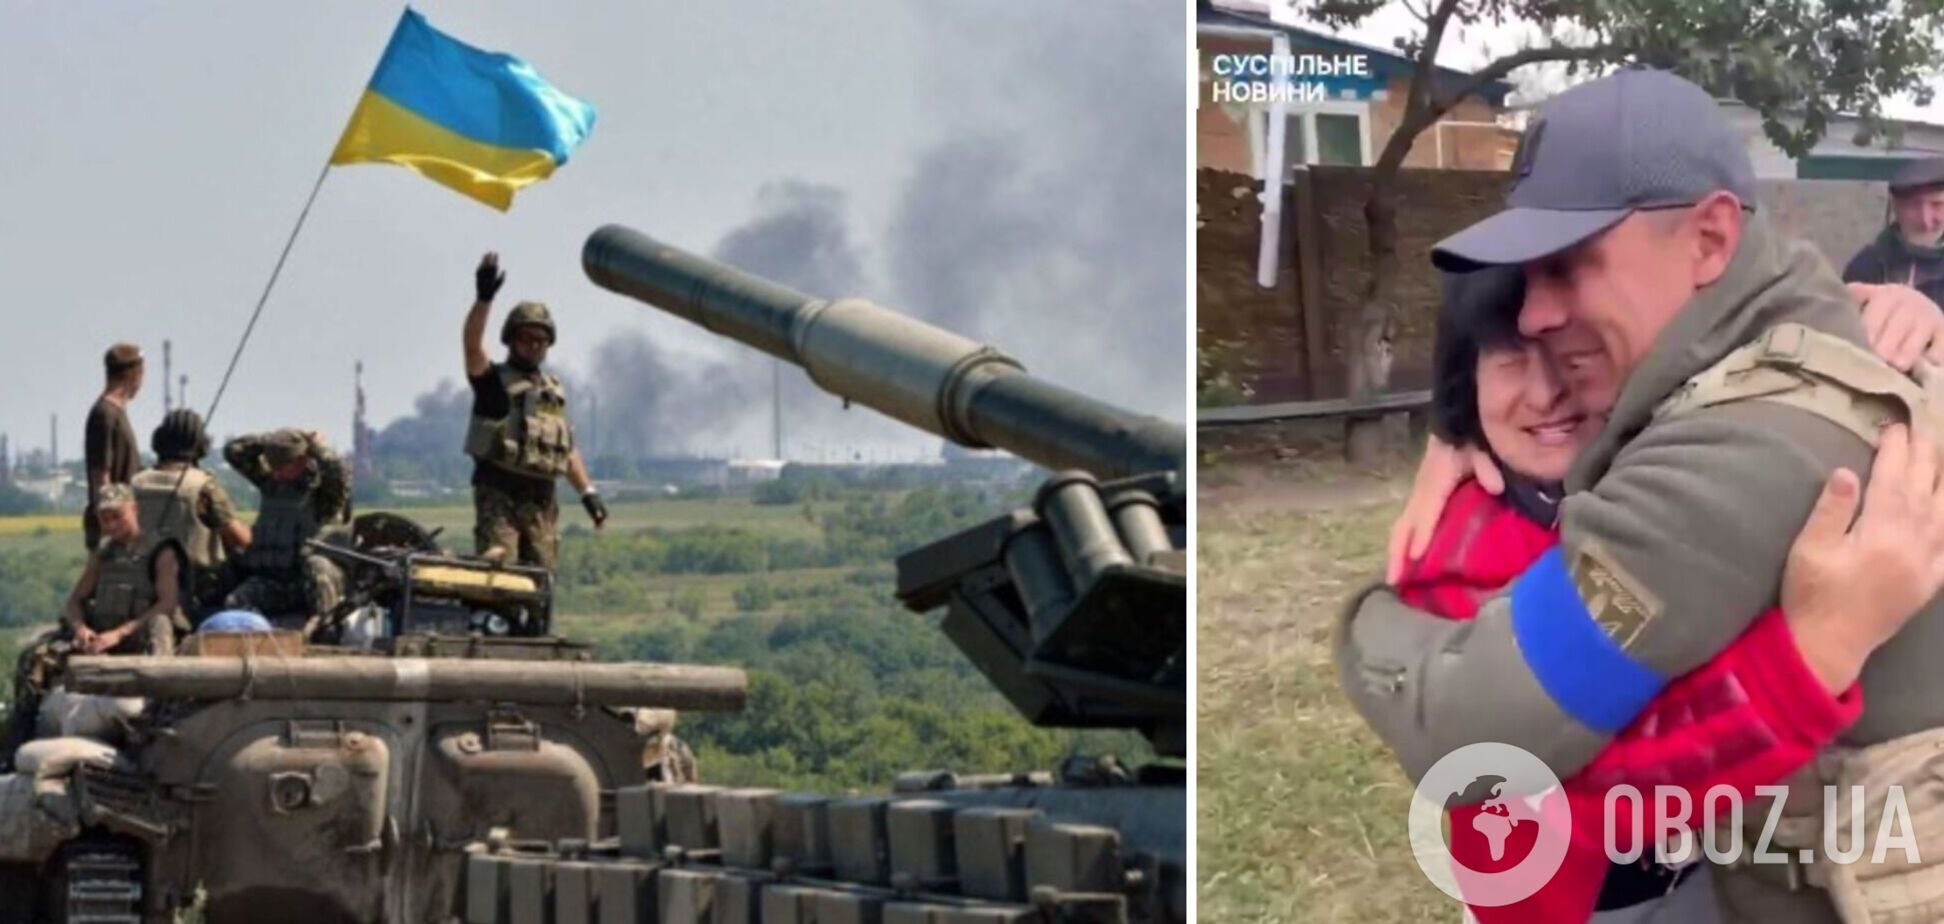 'Я ждала, що ти прийдеш': момент зустрічі захисника України з мамою у звільненому селі показали на відео